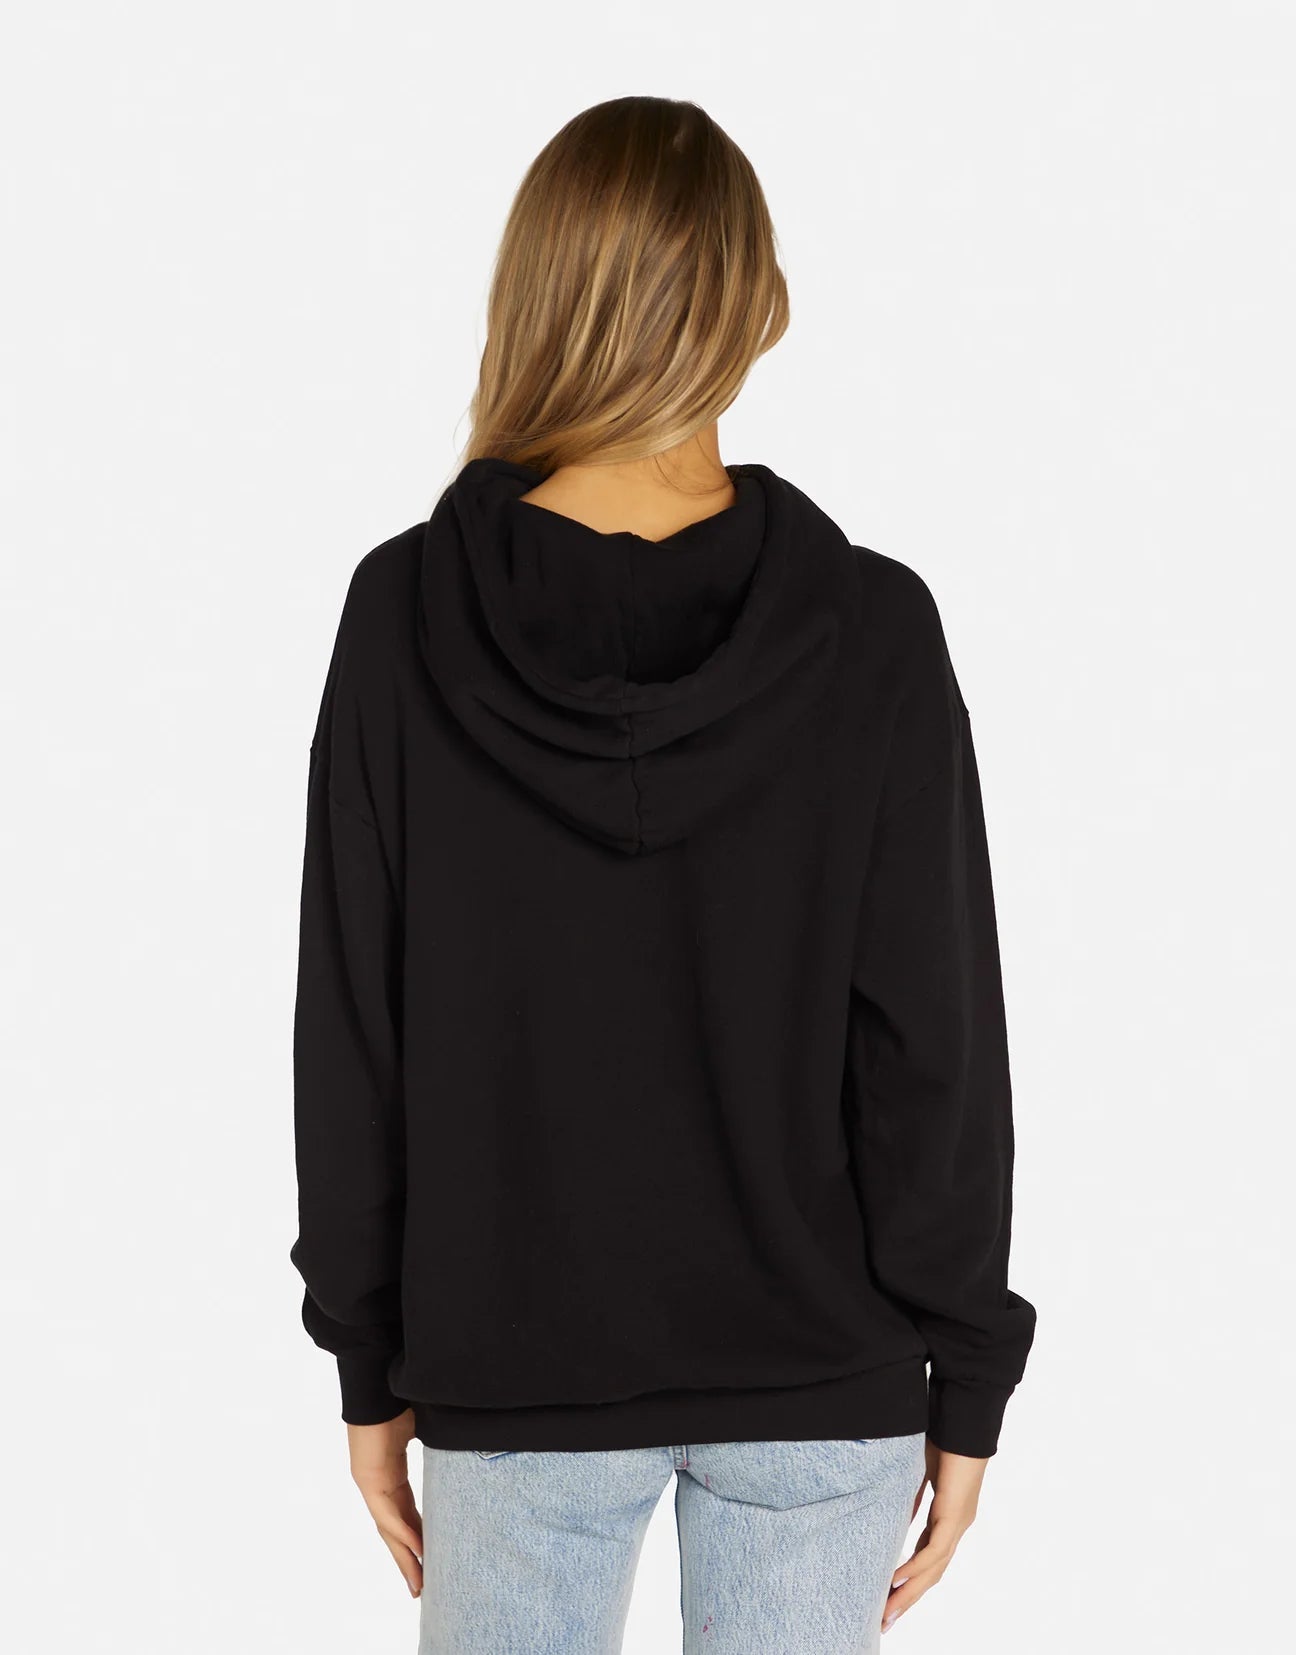 Shop Lauren Moshi Harmony Mels Drive-In Hooded Sweater - Premium Sweatshirt from Lauren Moshi Online now at Spoiled Brat 